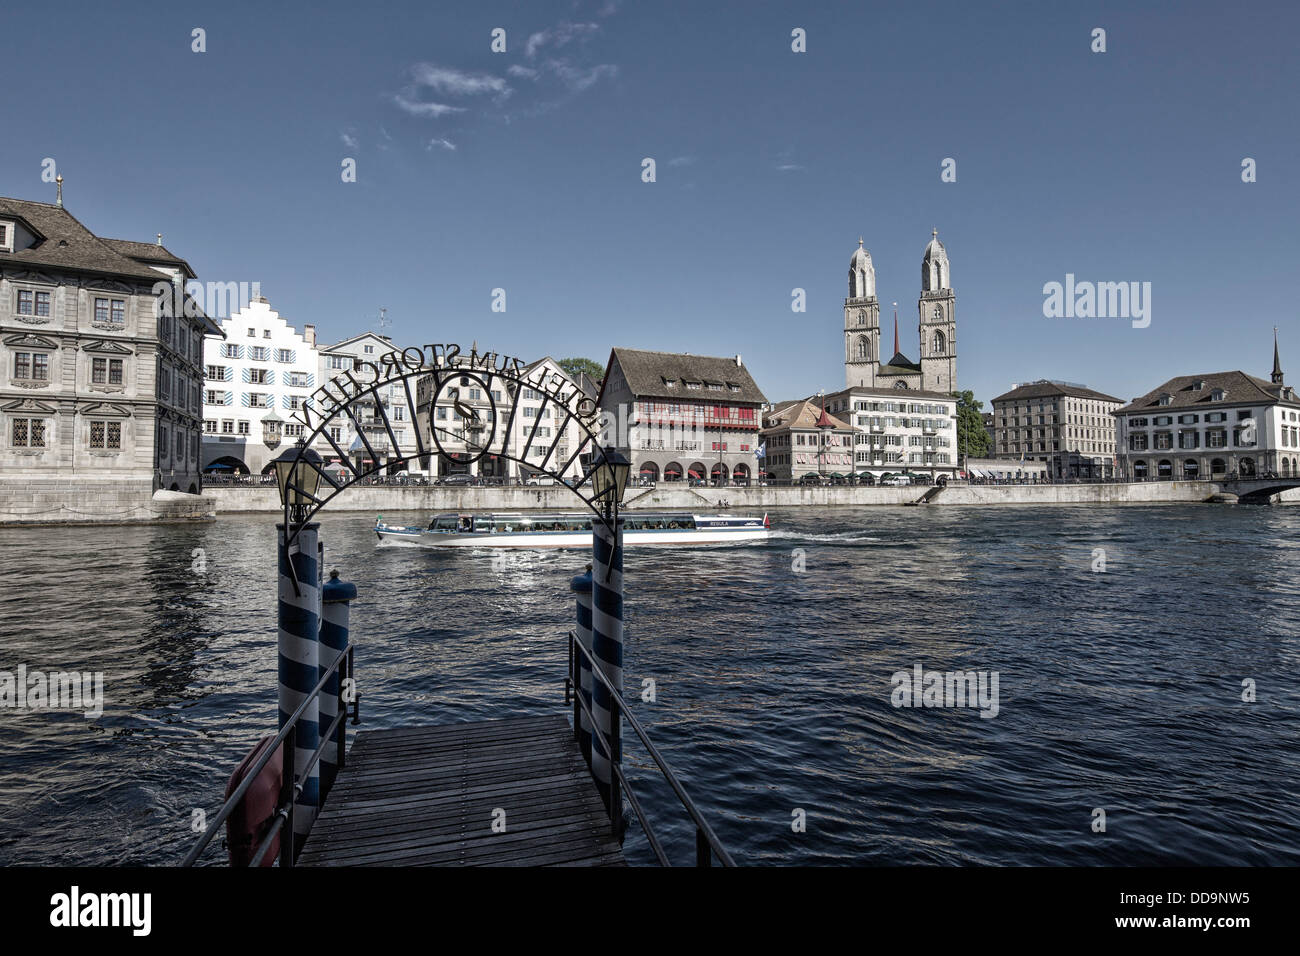 Switzerland, Zurich, View of pier of Hotel Storchen Stock Photo